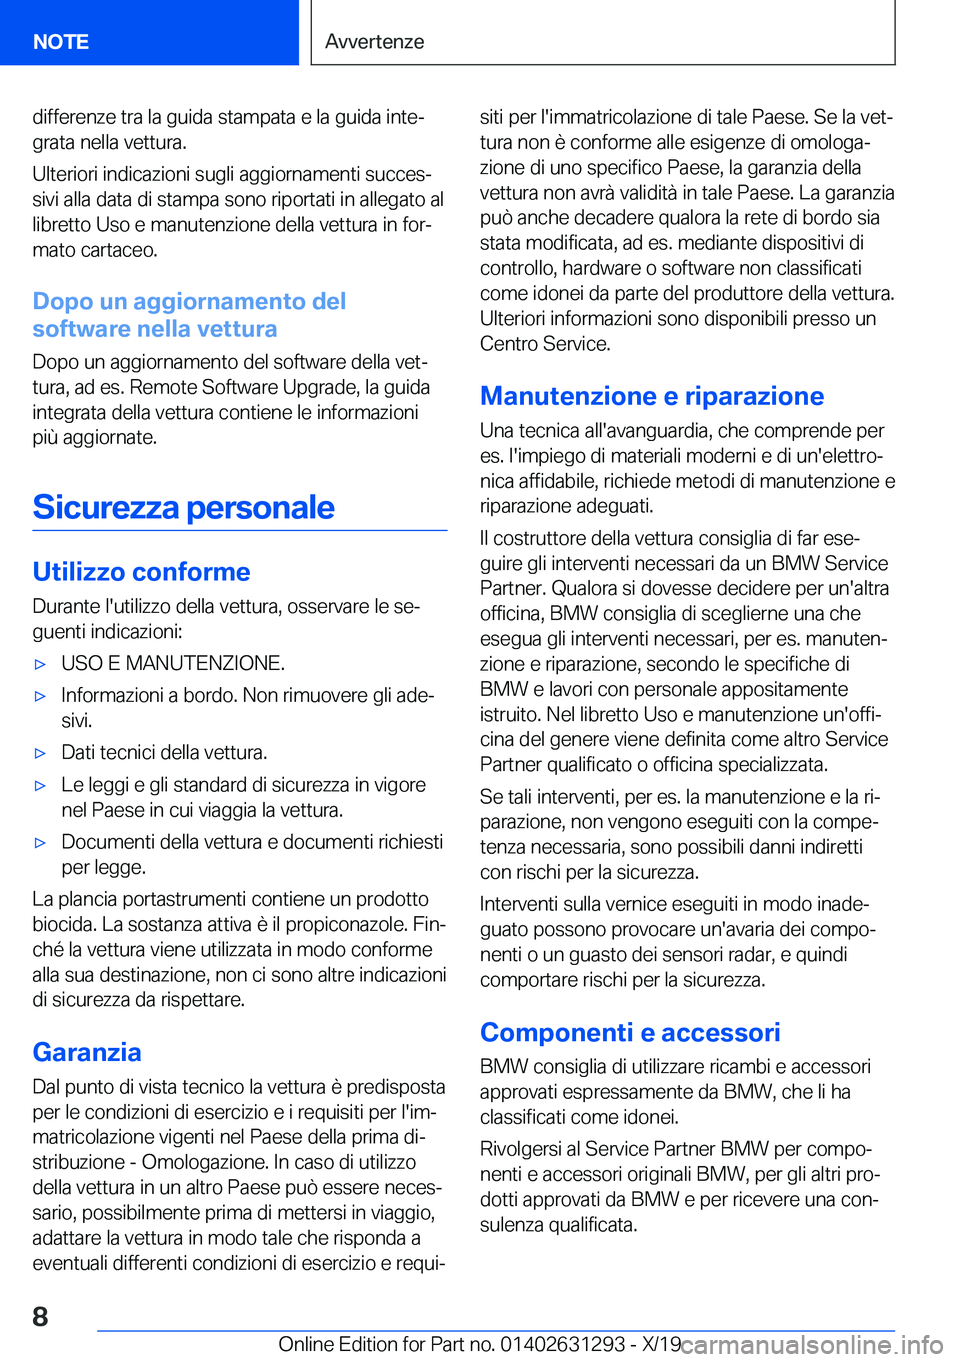 BMW M8 2020  Libretti Di Uso E manutenzione (in Italian) �d�i�f�f�e�r�e�n�z�e��t�r�a��l�a��g�u�i�d�a��s�t�a�m�p�a�t�a��e��l�a��g�u�i�d�a��i�n�t�eª�g�r�a�t�a��n�e�l�l�a��v�e�t�t�u�r�a�.
�U�l�t�e�r�i�o�r�i��i�n�d�i�c�a�z�i�o�n�i��s�u�g�l�i��a�g